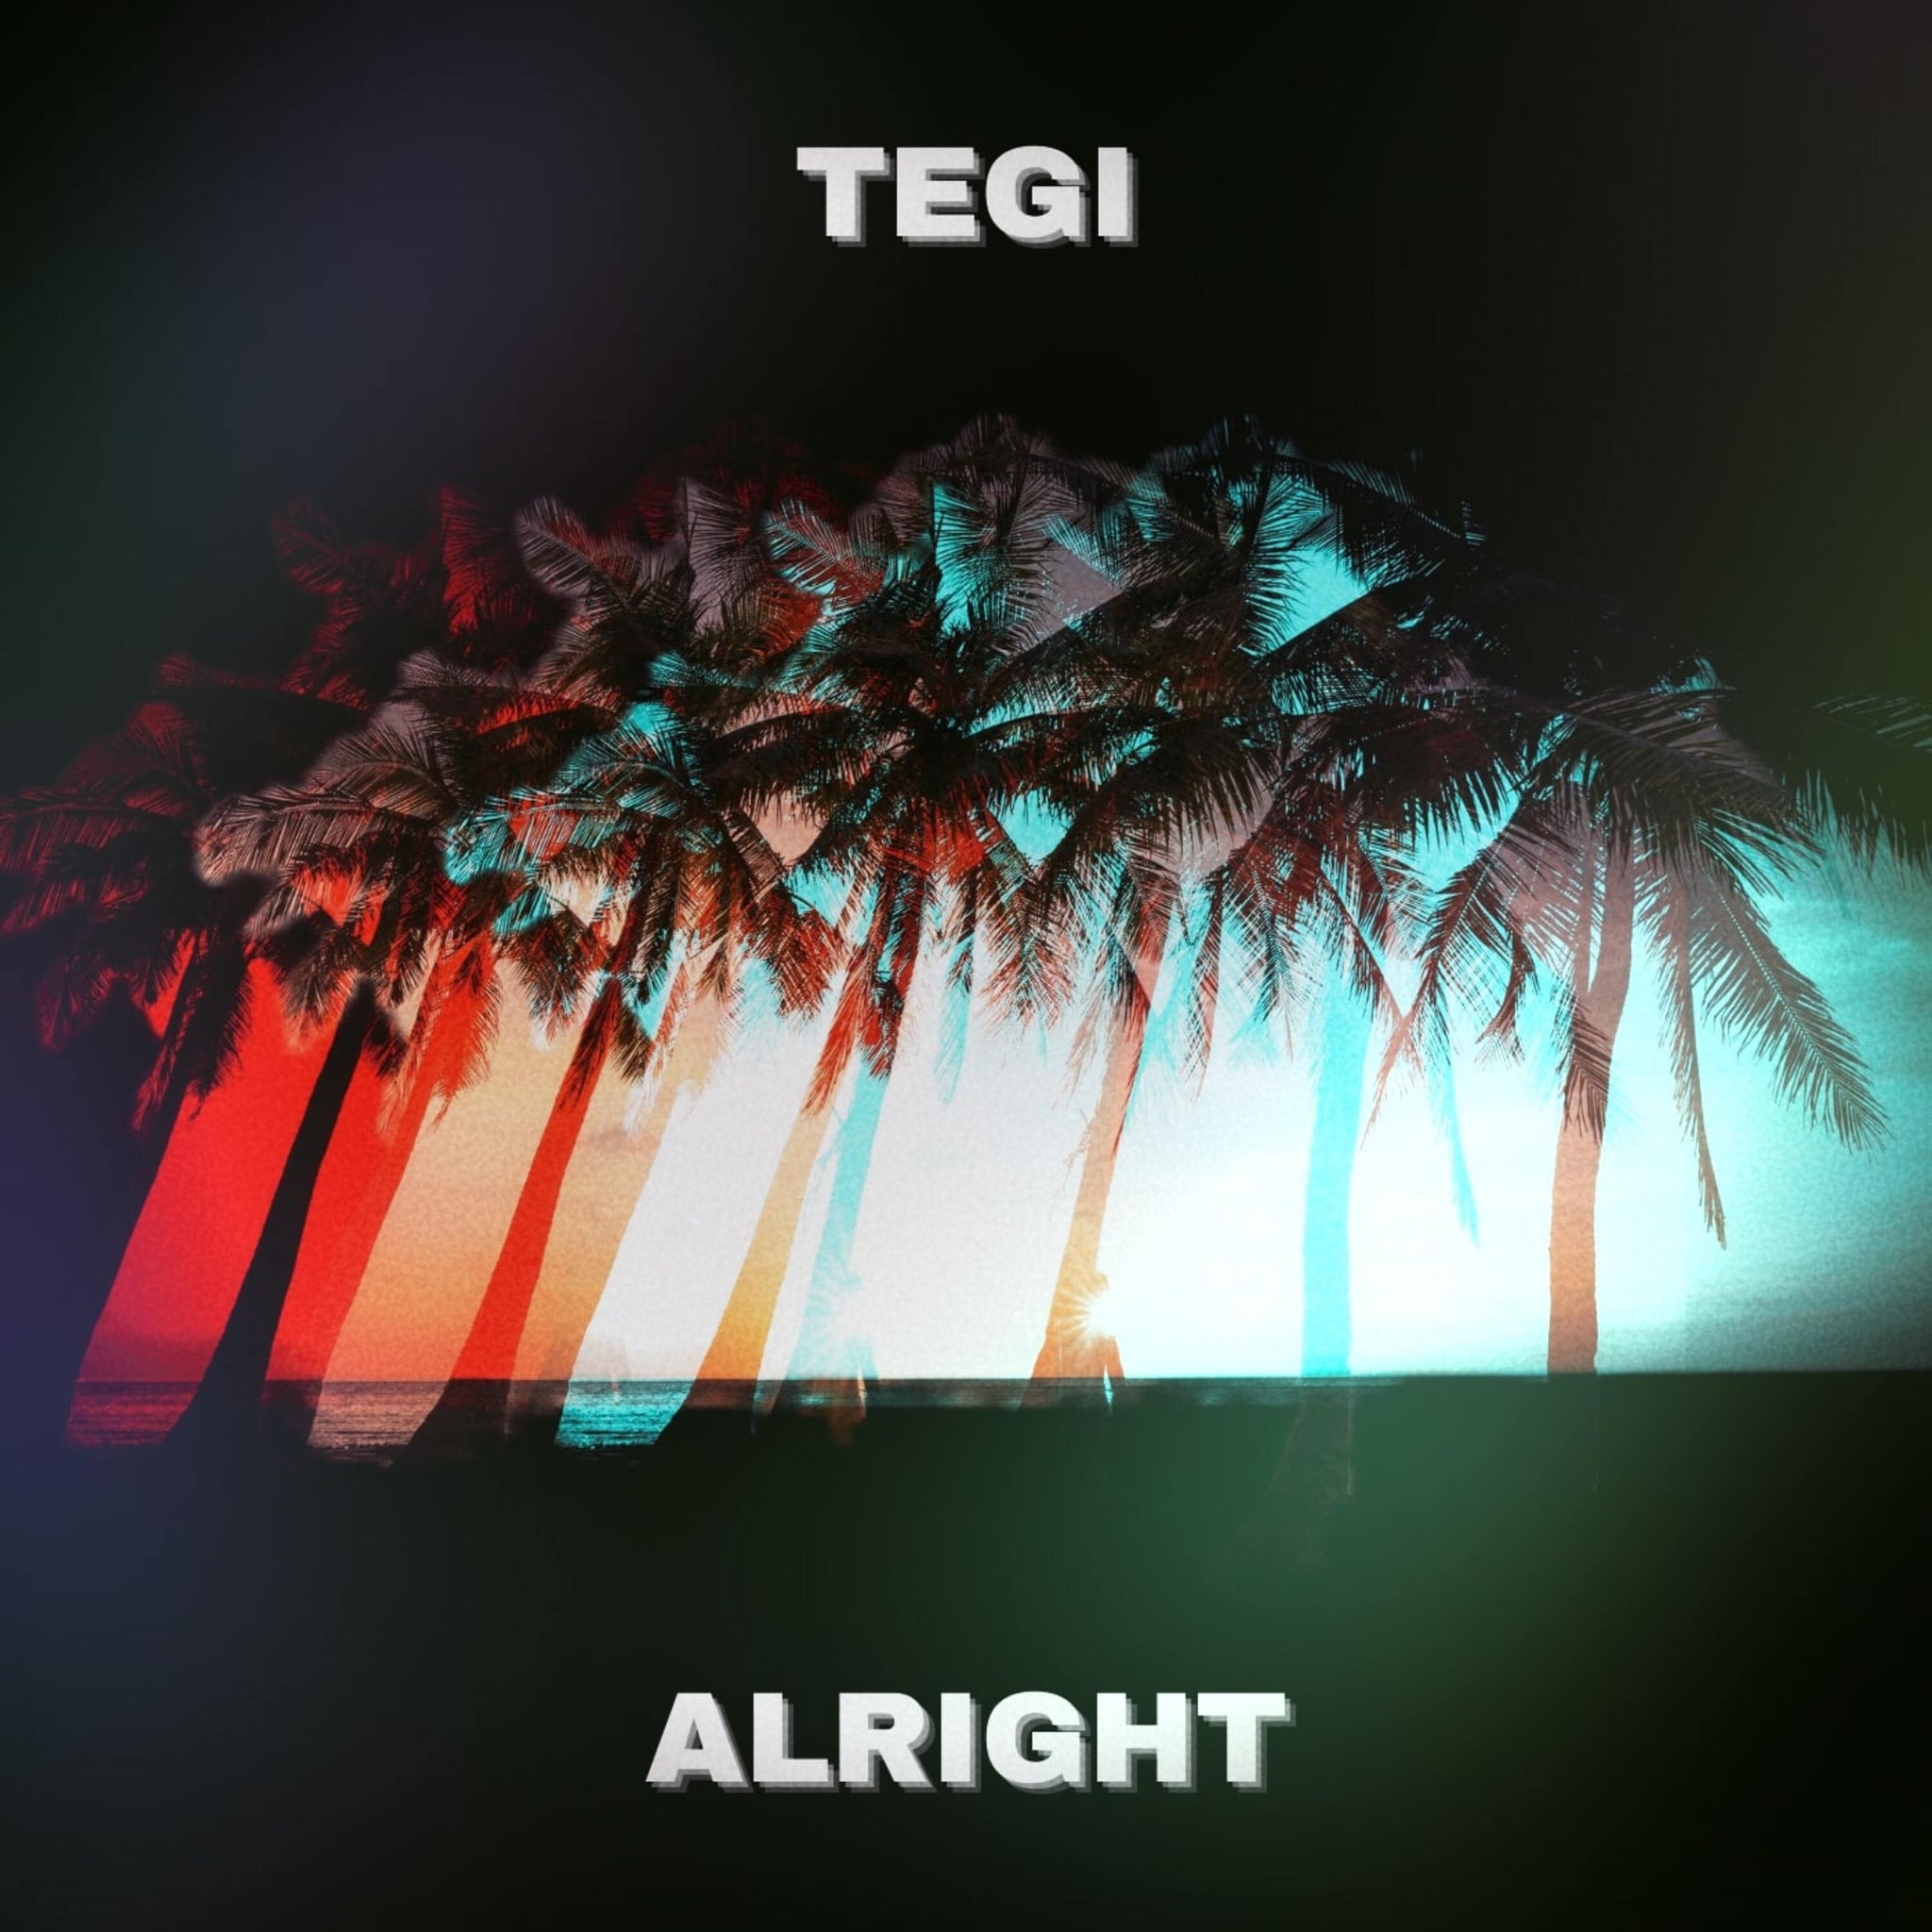 Alright - TEGI - Scraps Audio